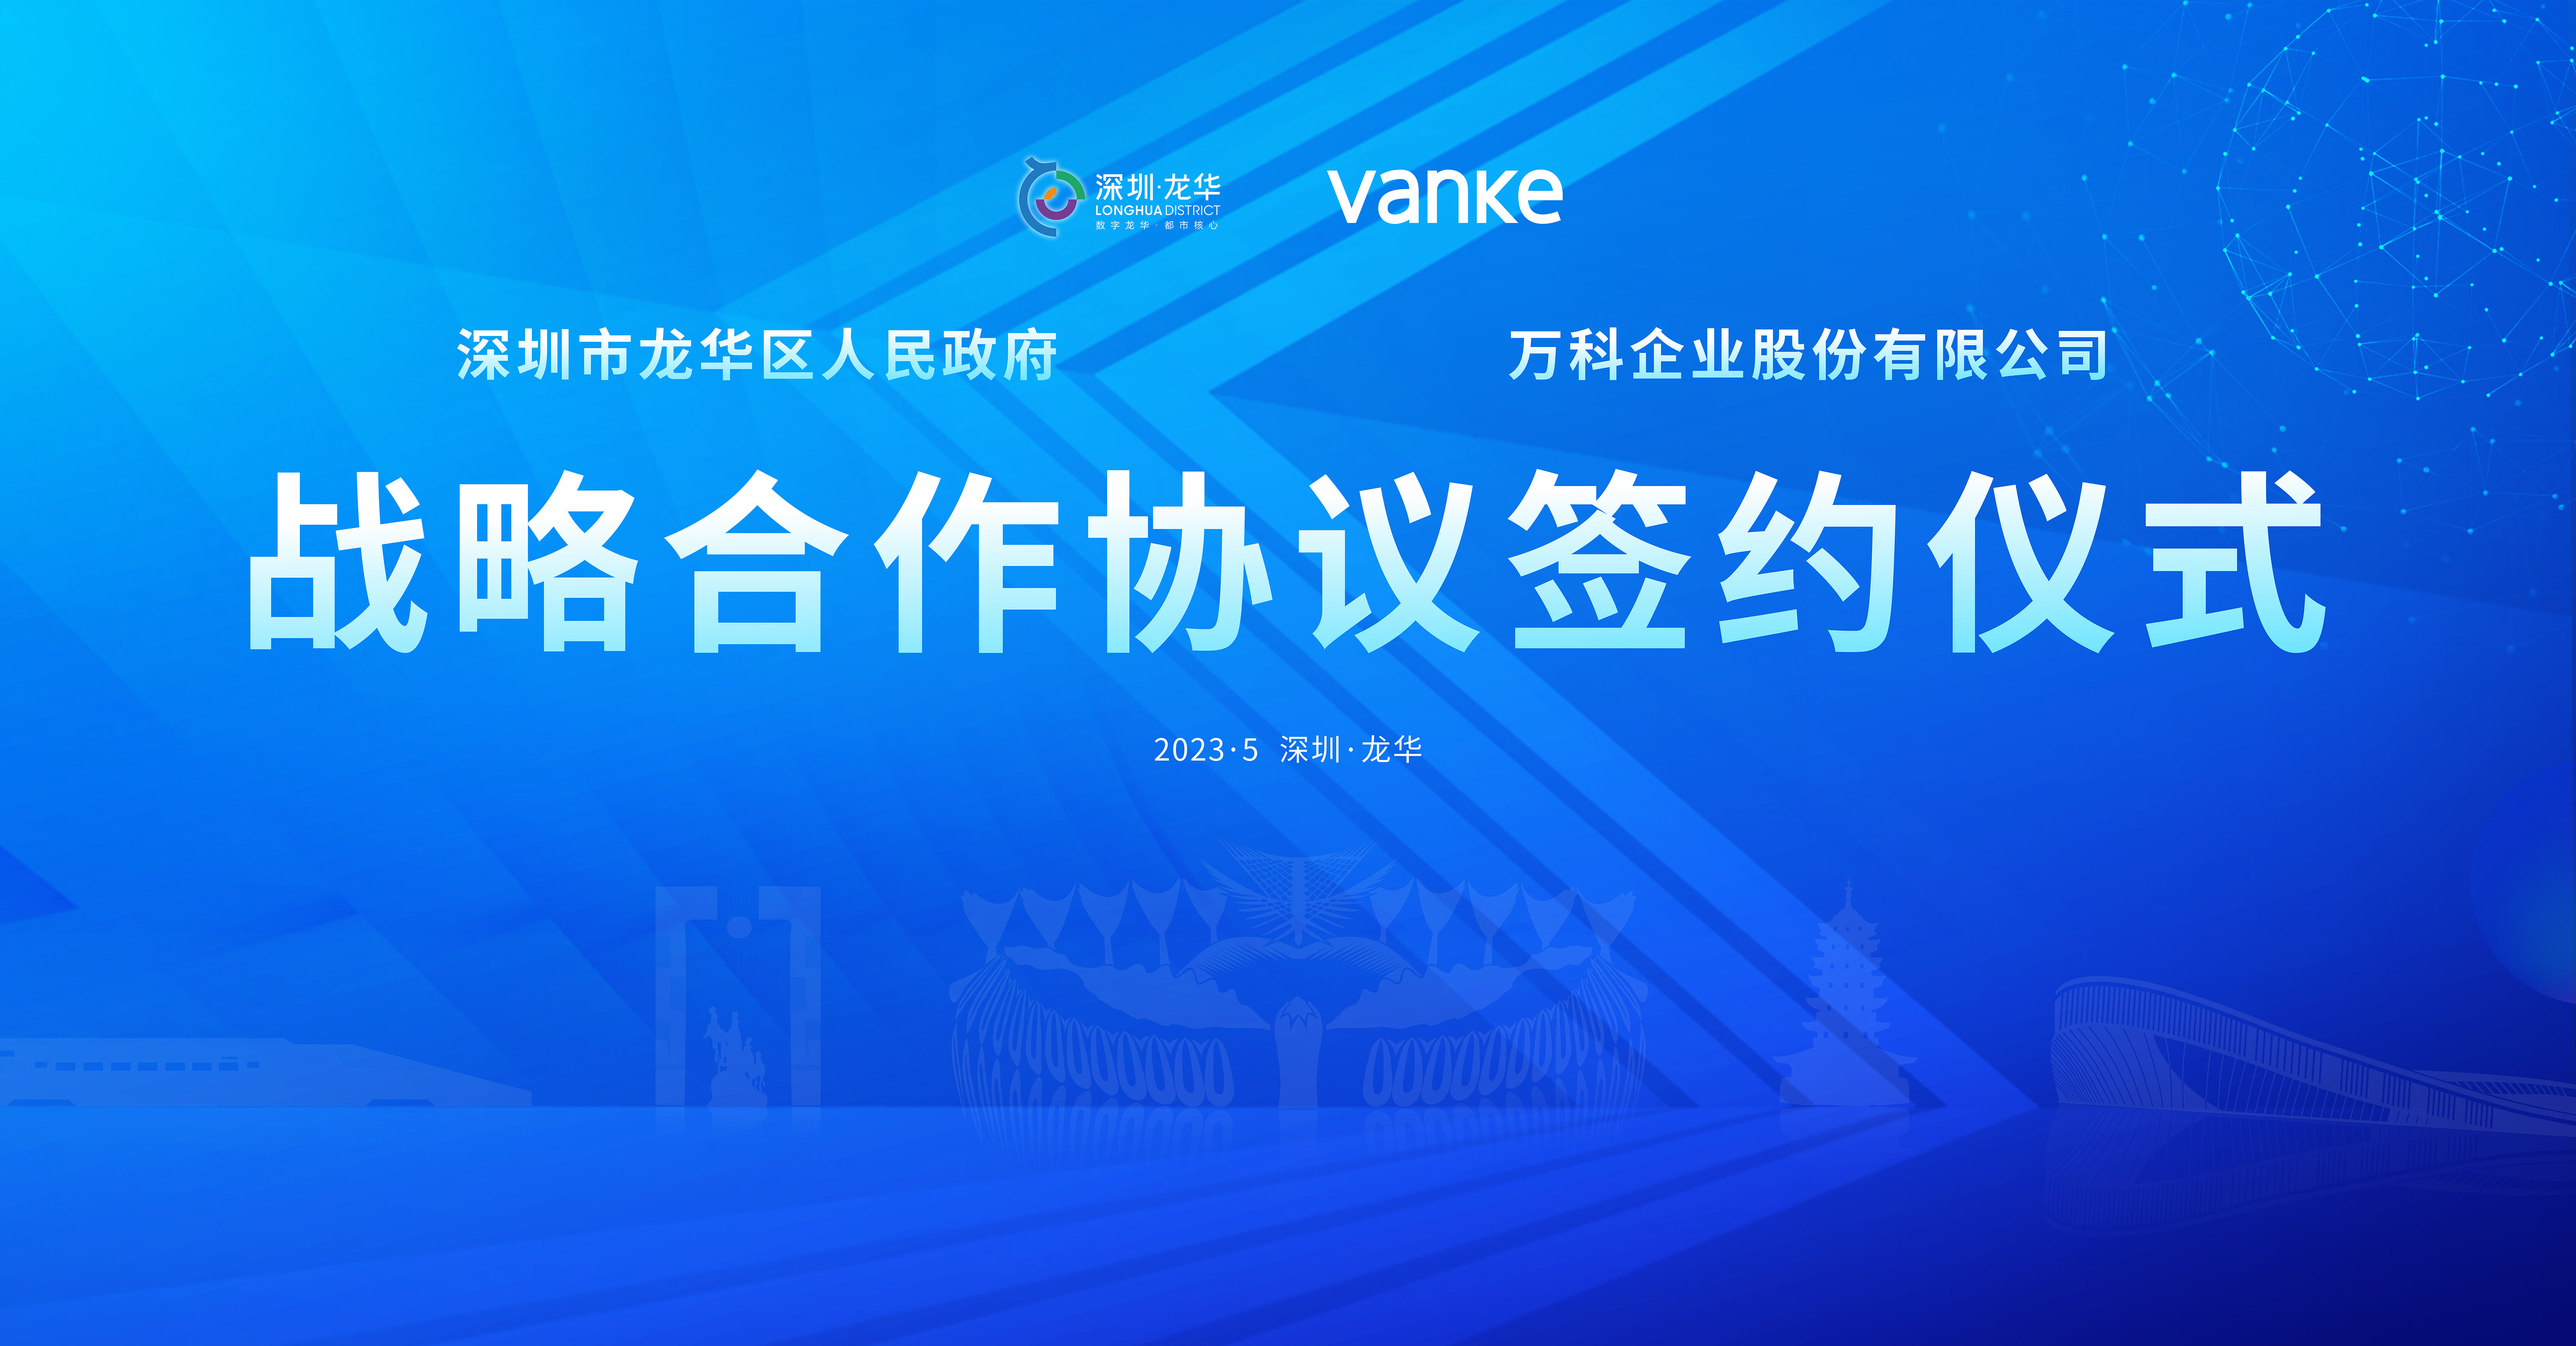 深圳市龙华区人民政府与万科企业股份有限公司战略合作框架协议签约仪式成功举办